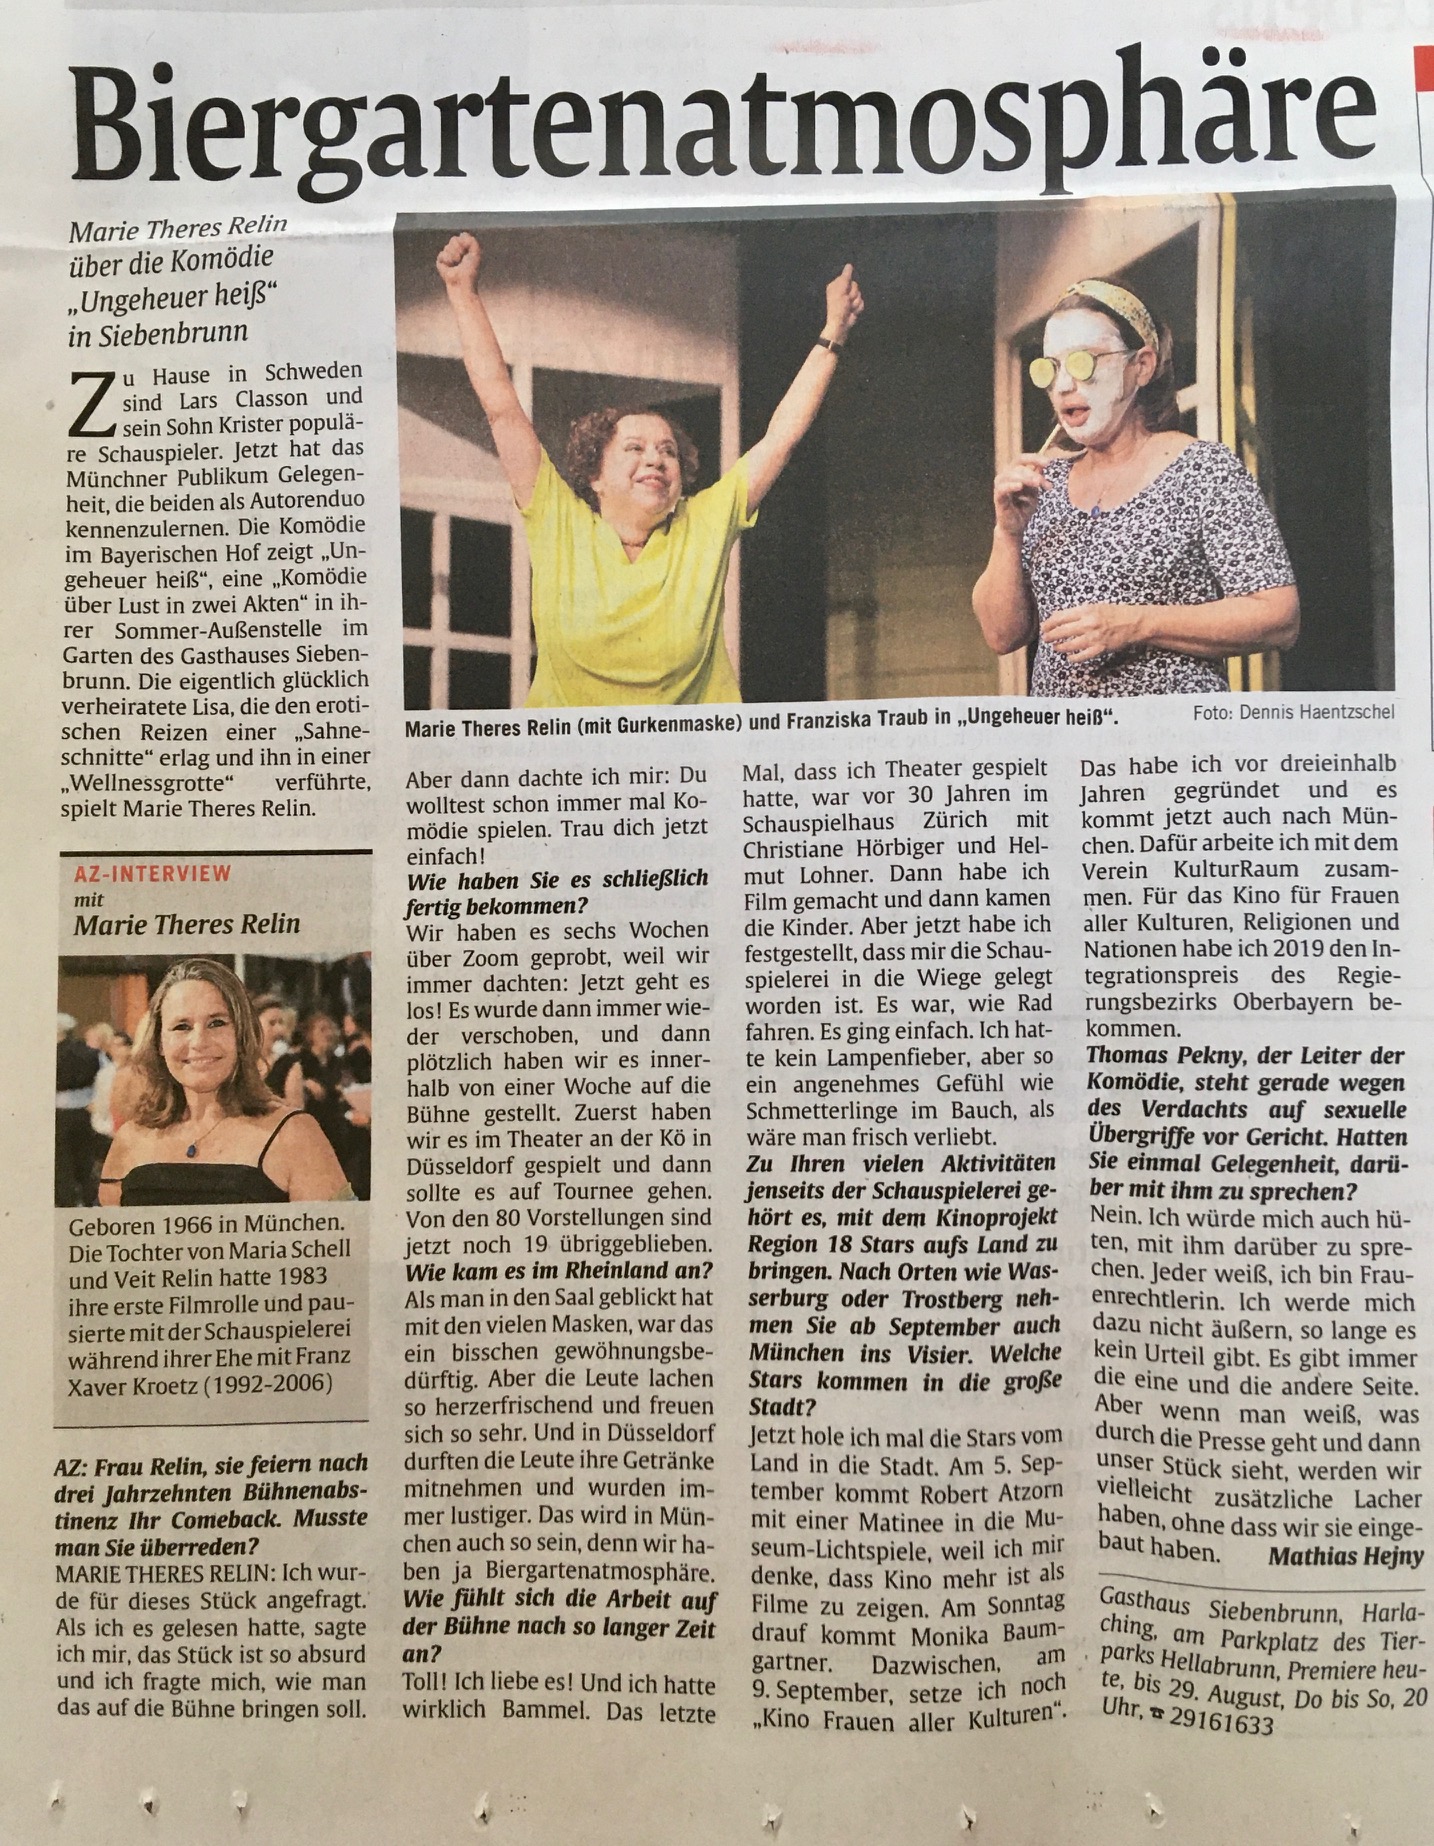 You are currently viewing Abendzeitung – Biergartenatmosphäre